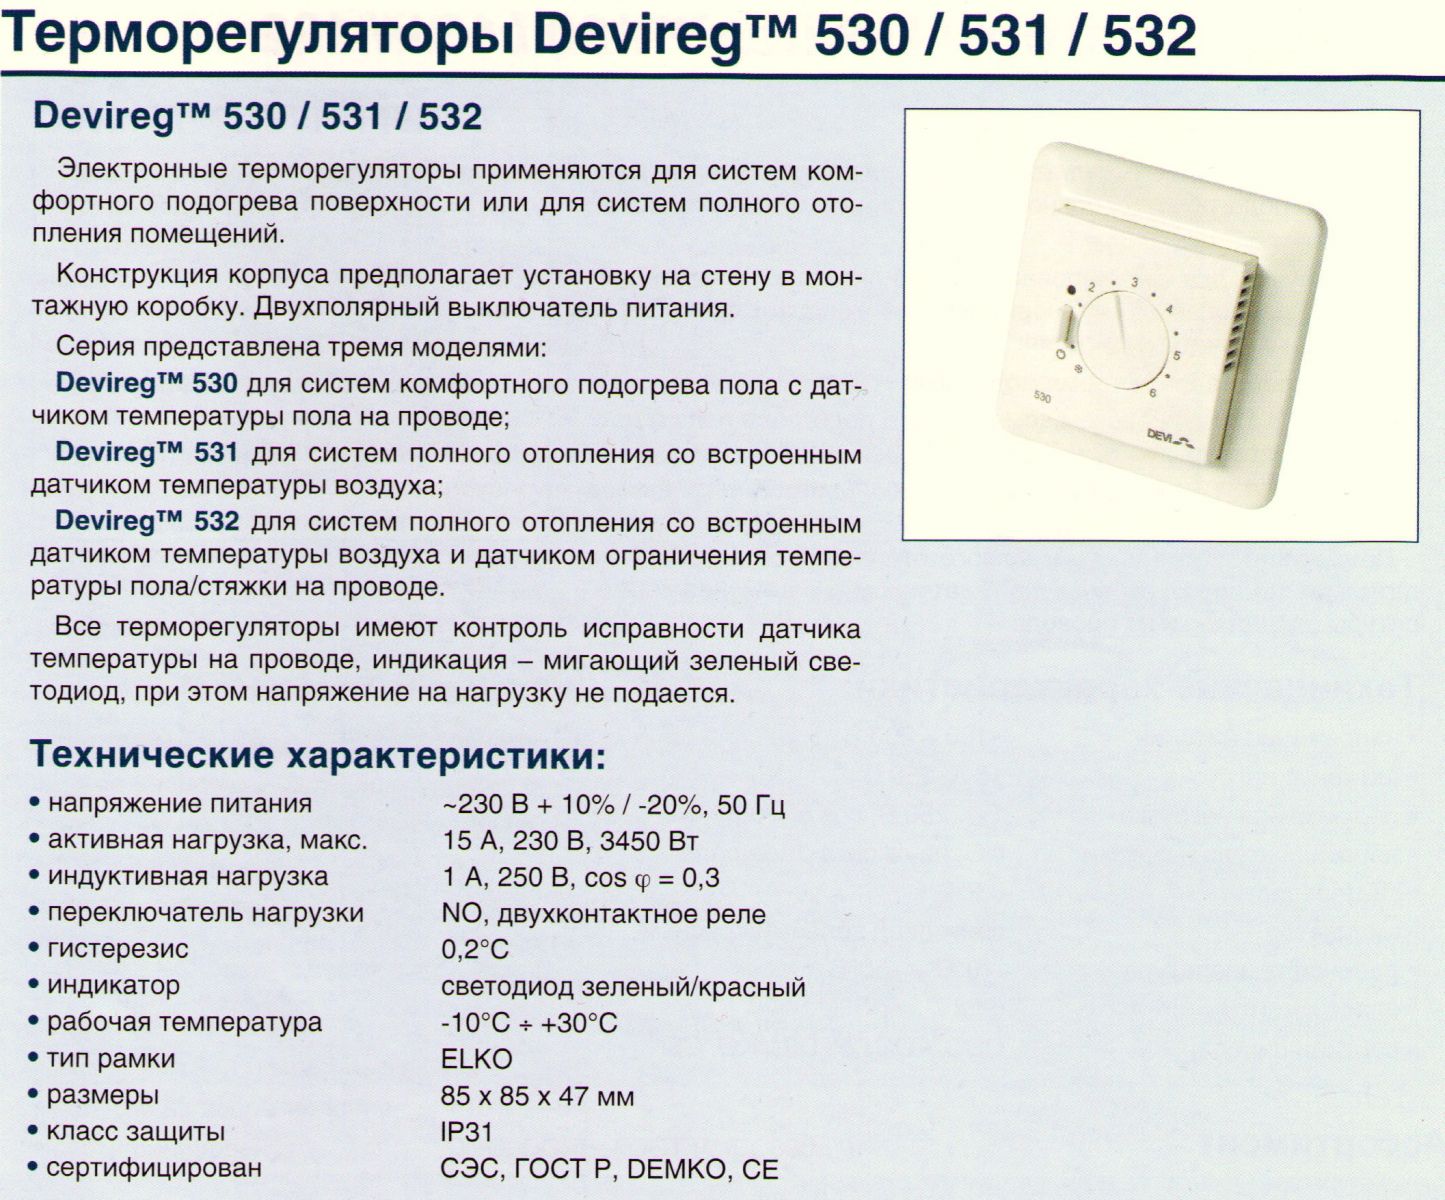 Схема терморегулятора Devireg 530, 531, 532